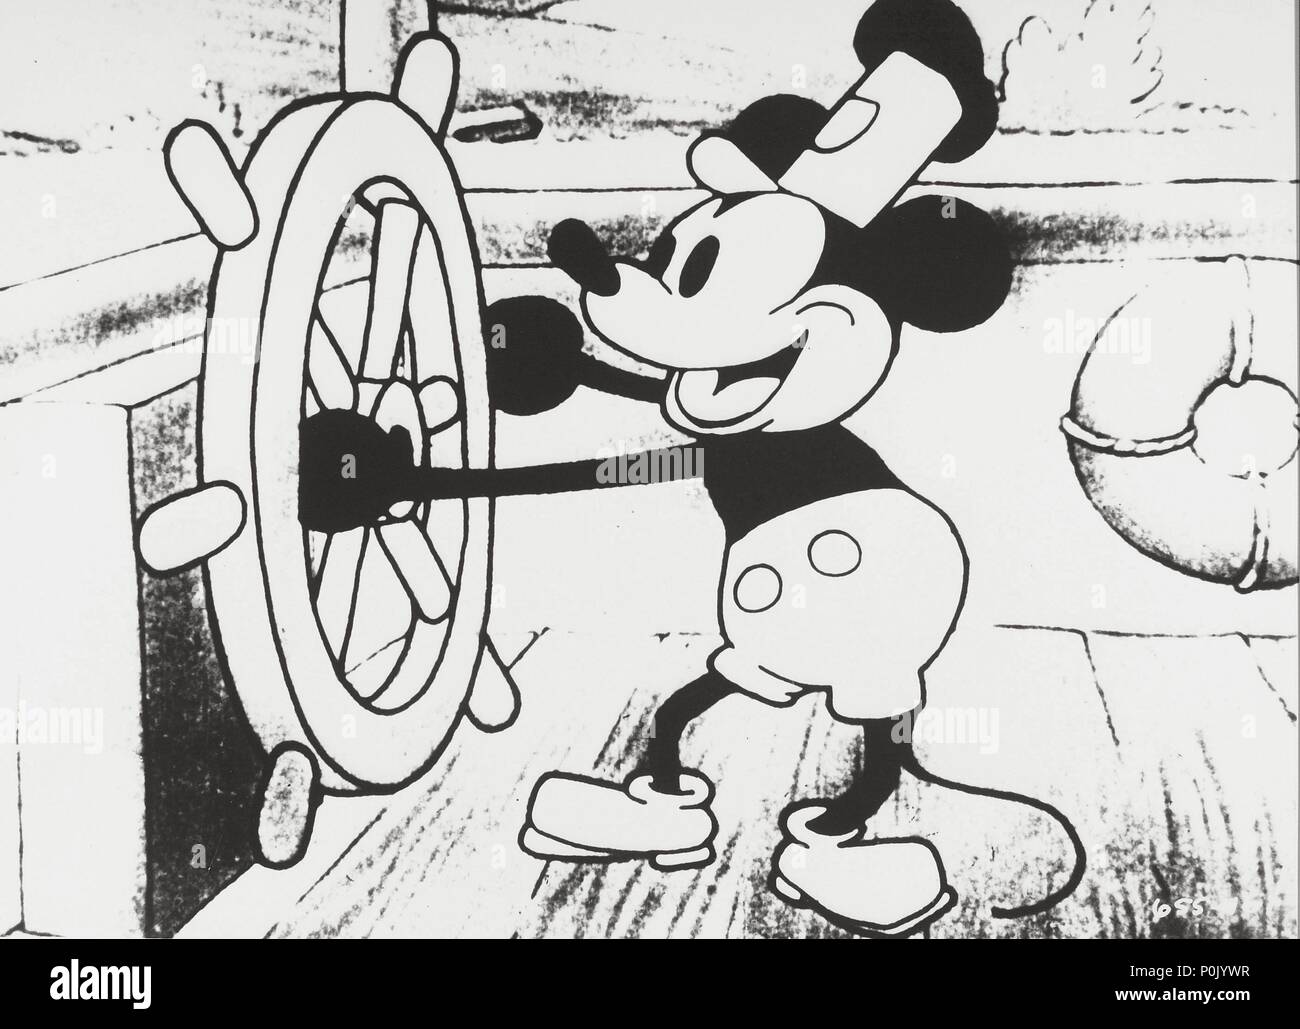 imagen espiral Etapa Descripción: Mickey Mouse en Steamboat Willie, el primer corto de dibujos  animados películas realizadas con sonido en 1928. El título de la película  original: MISC: Mickey Mouse. Título en inglés: MISC: Mickey